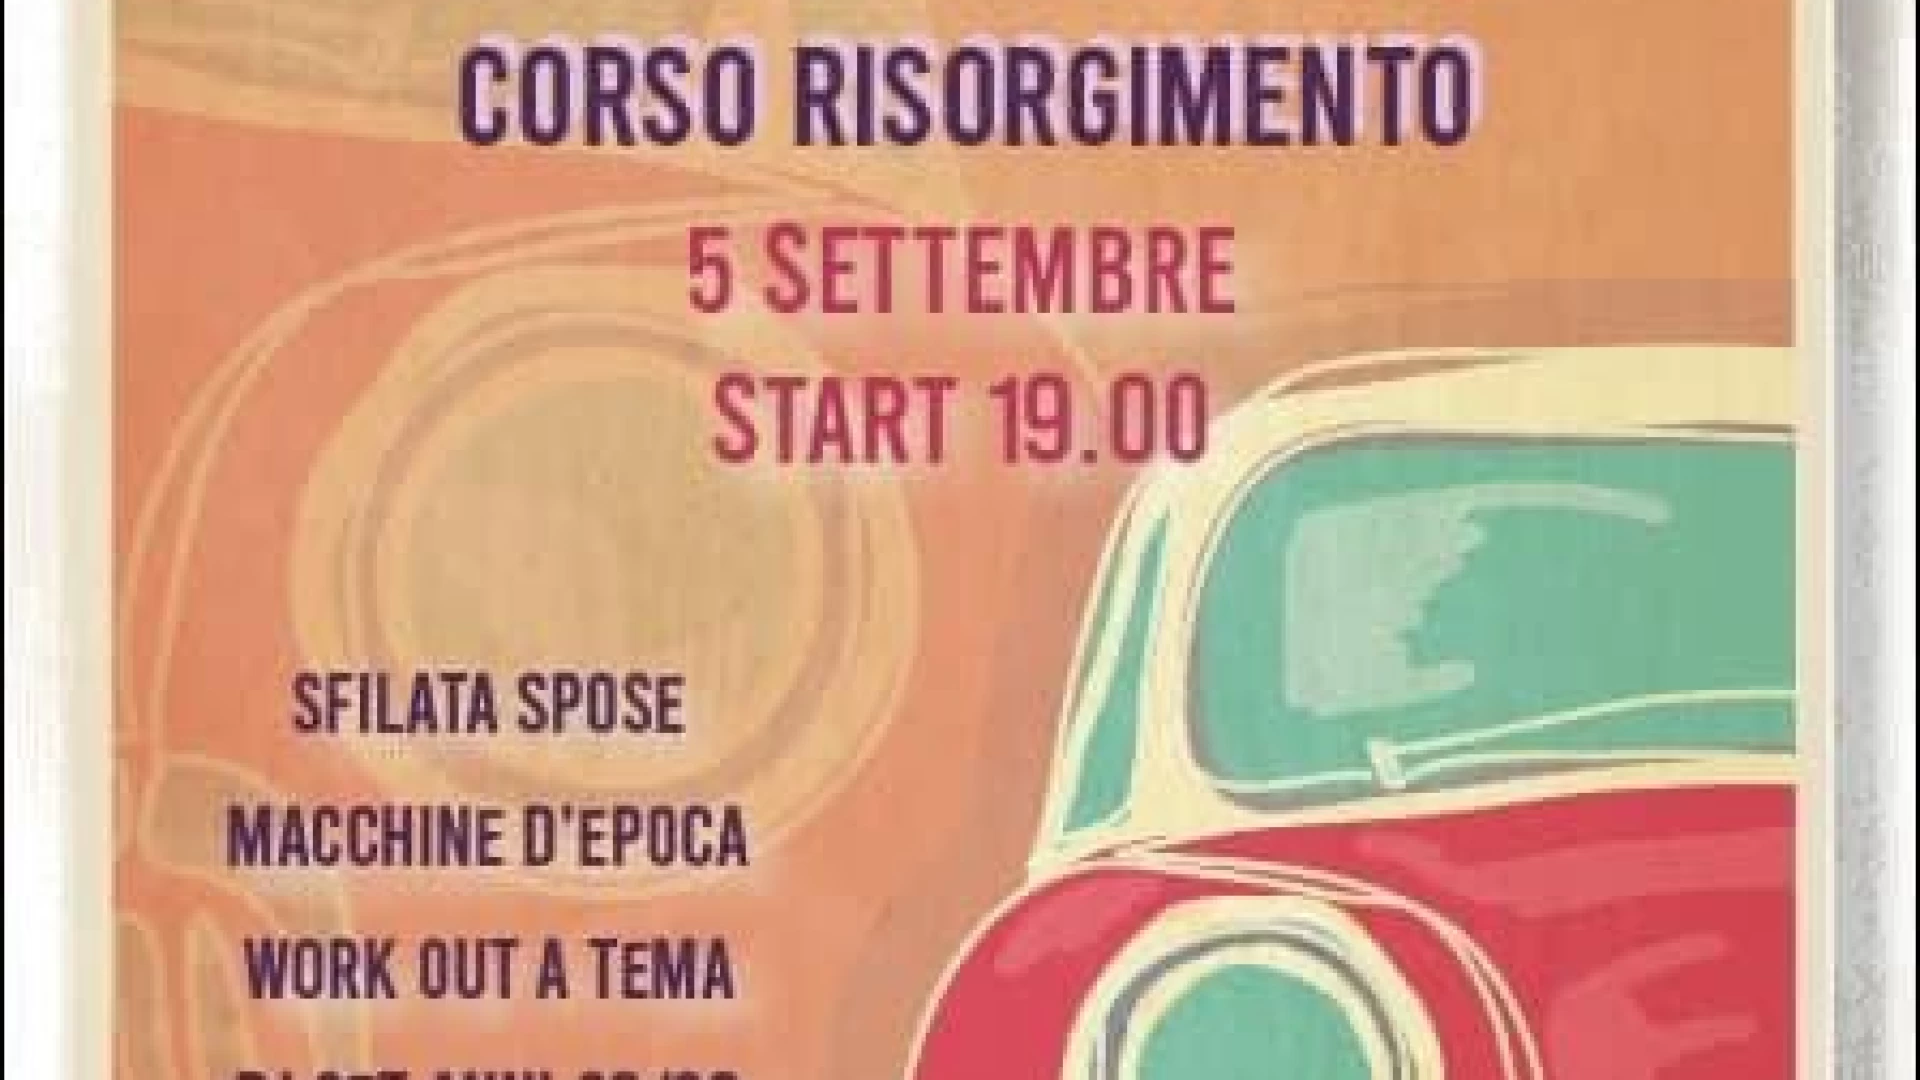 80 in Corso, ad Isernia martedì 5 settembre si accende la festa a tema organizzata dai commercianti e Pro Loco. Corso Risorgimento si trasforma per una serata speciale.